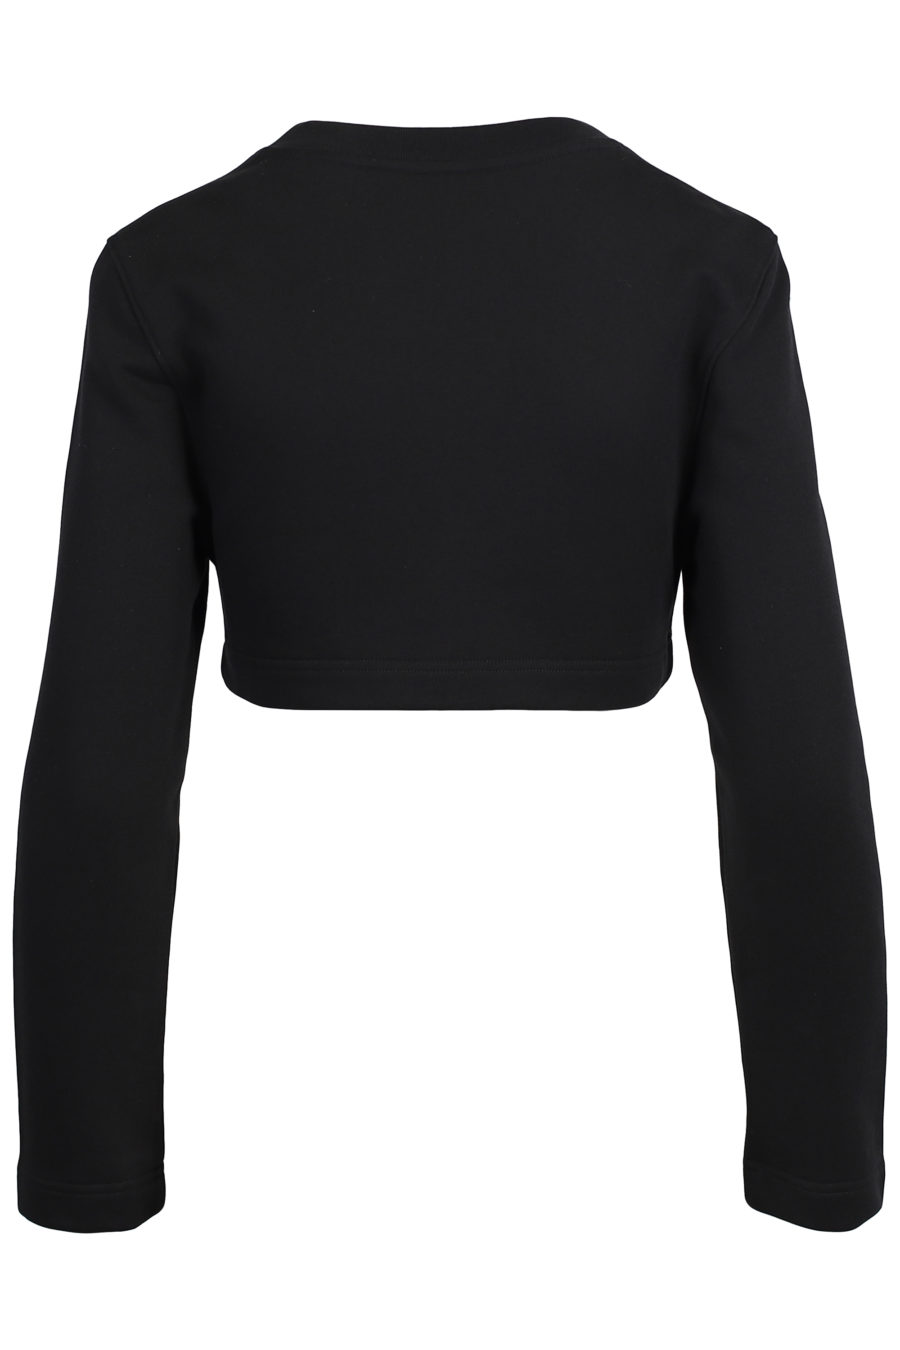 Kurzes schwarzes Sweatshirt mit Strasssteinen - IMG 2055